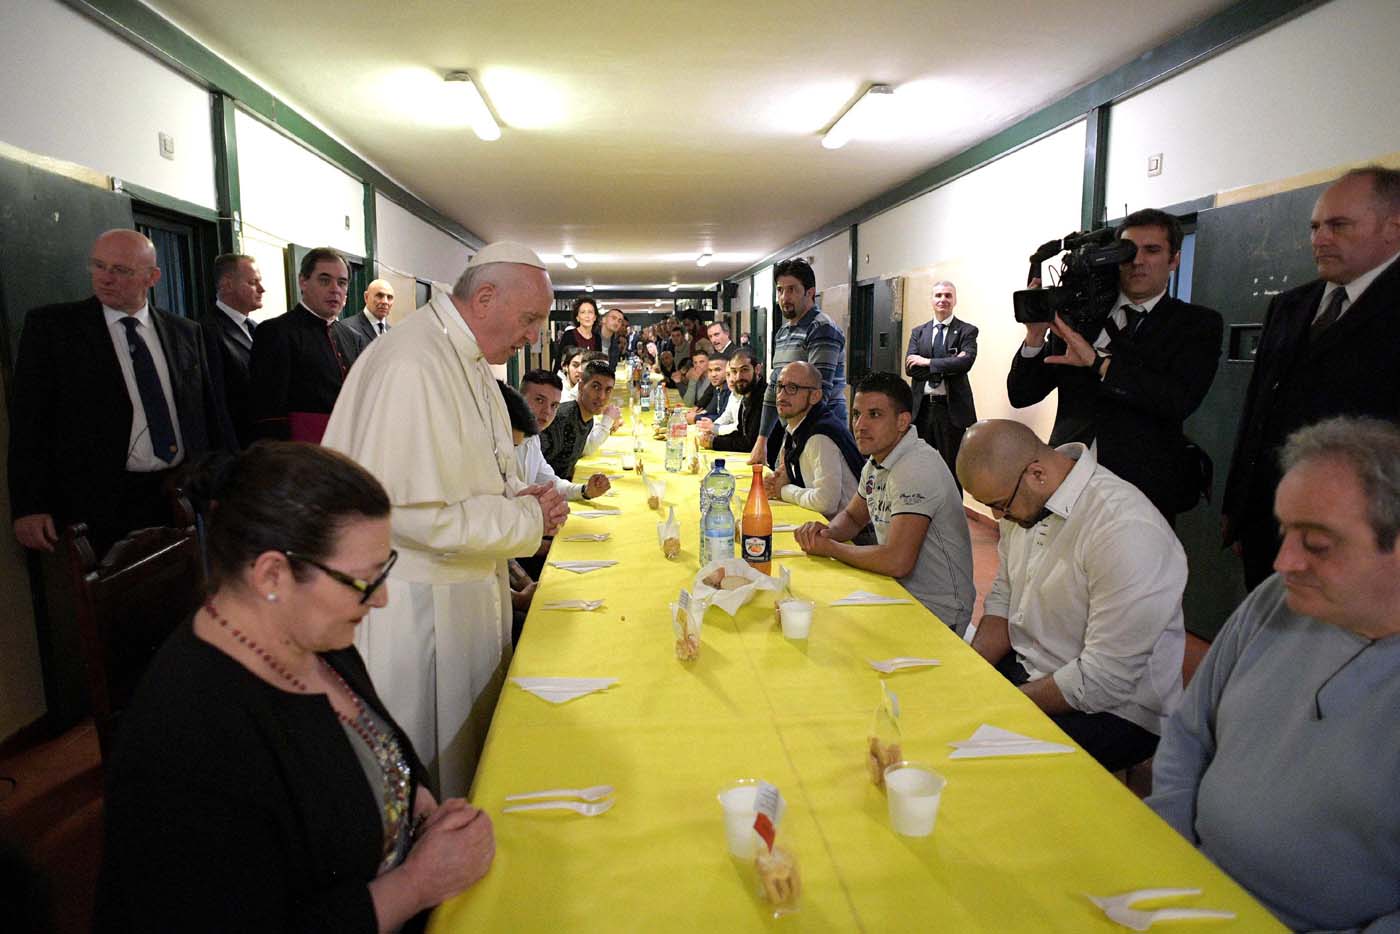 El Papa almorzó acompañado de reclusas latinas en una cárcel de Italia